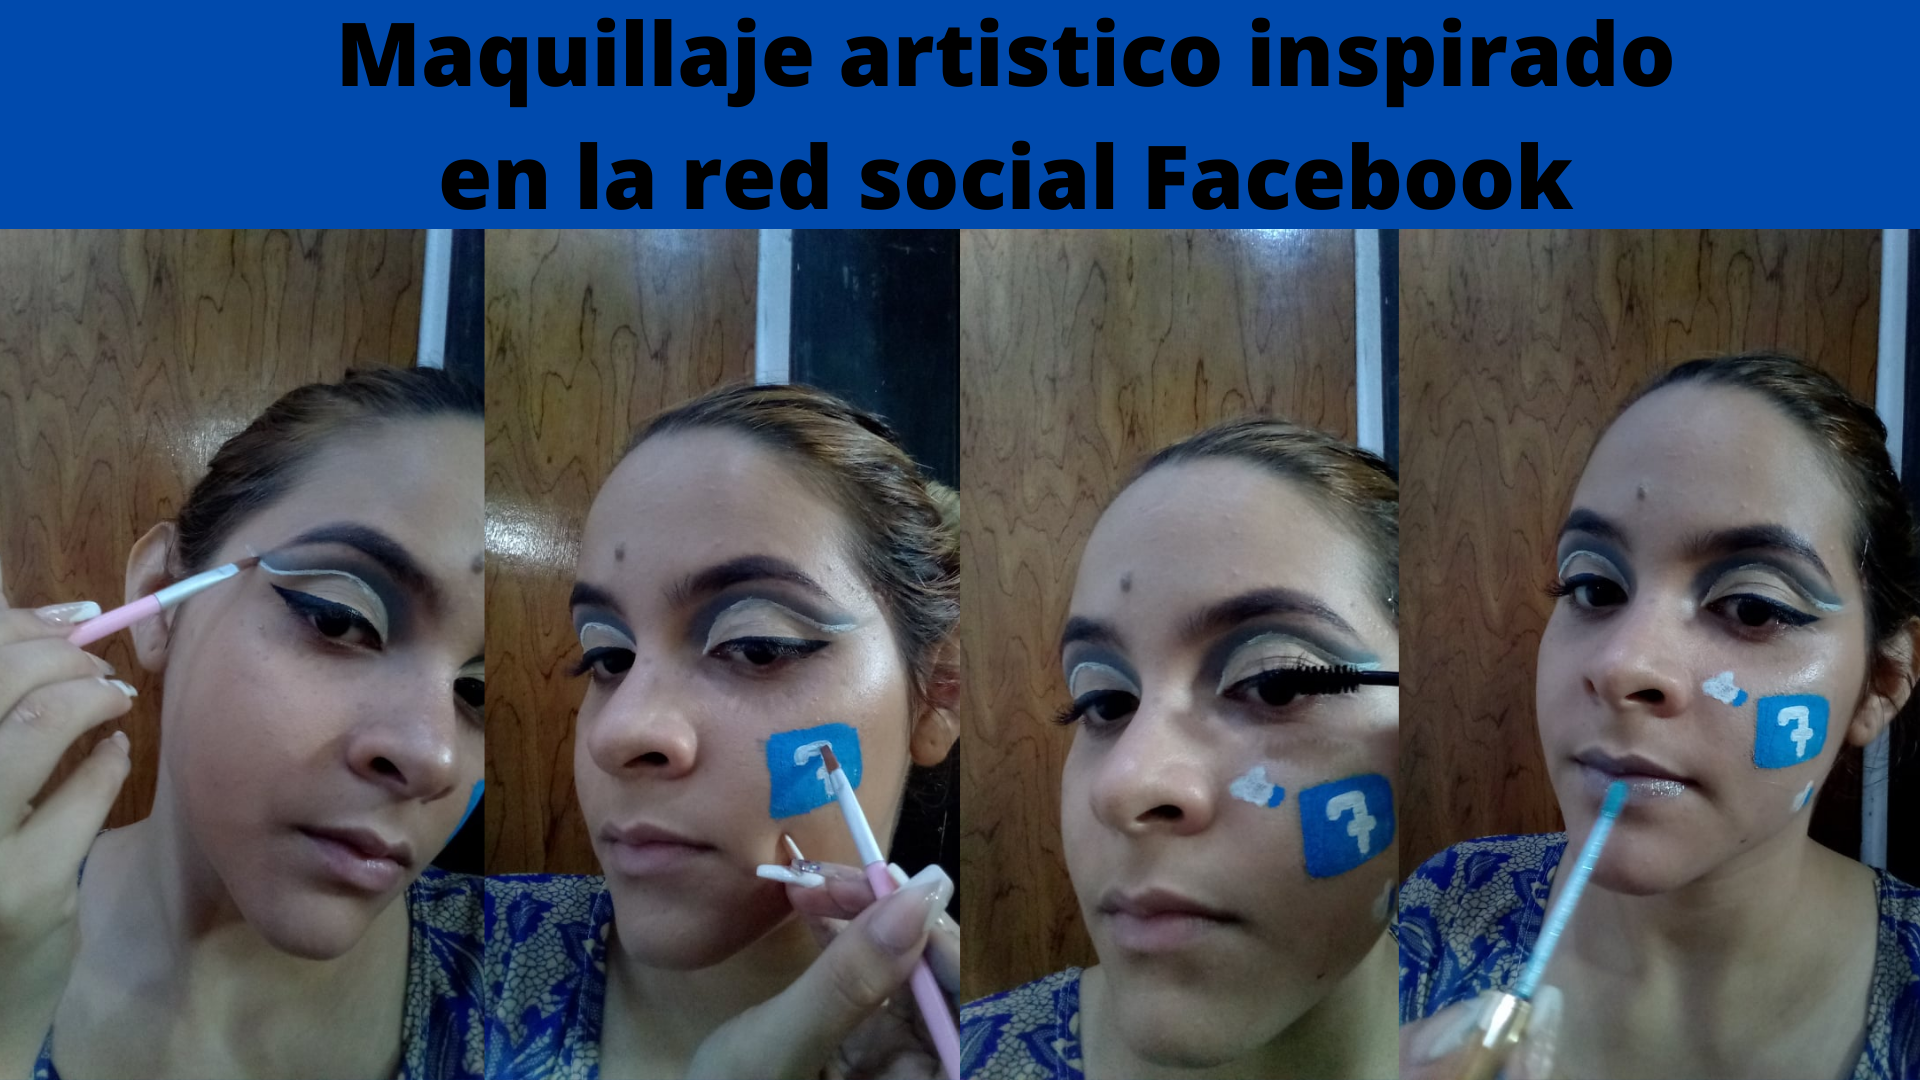 Maquillaje artistico inspirado en la red social Facebook (3).png